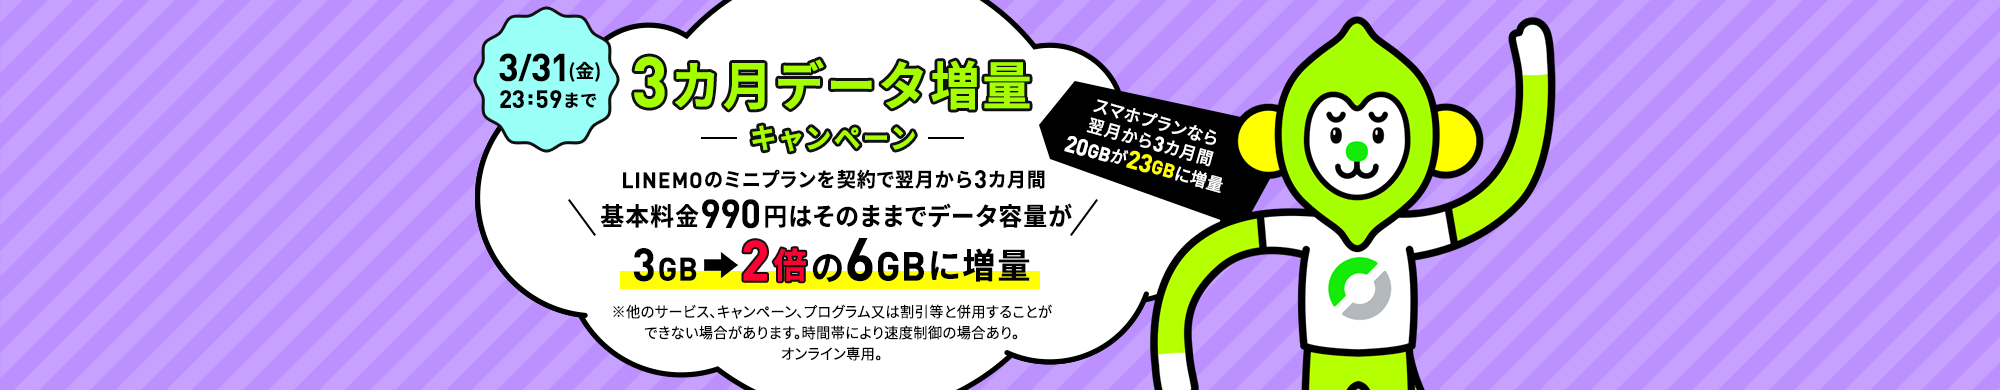 キャンペーン期間中に、LINEMOの「スマホプラン」または「ミニプラン」を契約で、翌月から3カ月間データ追加購入（550円/1GB）を毎月最大3回まで割引します。